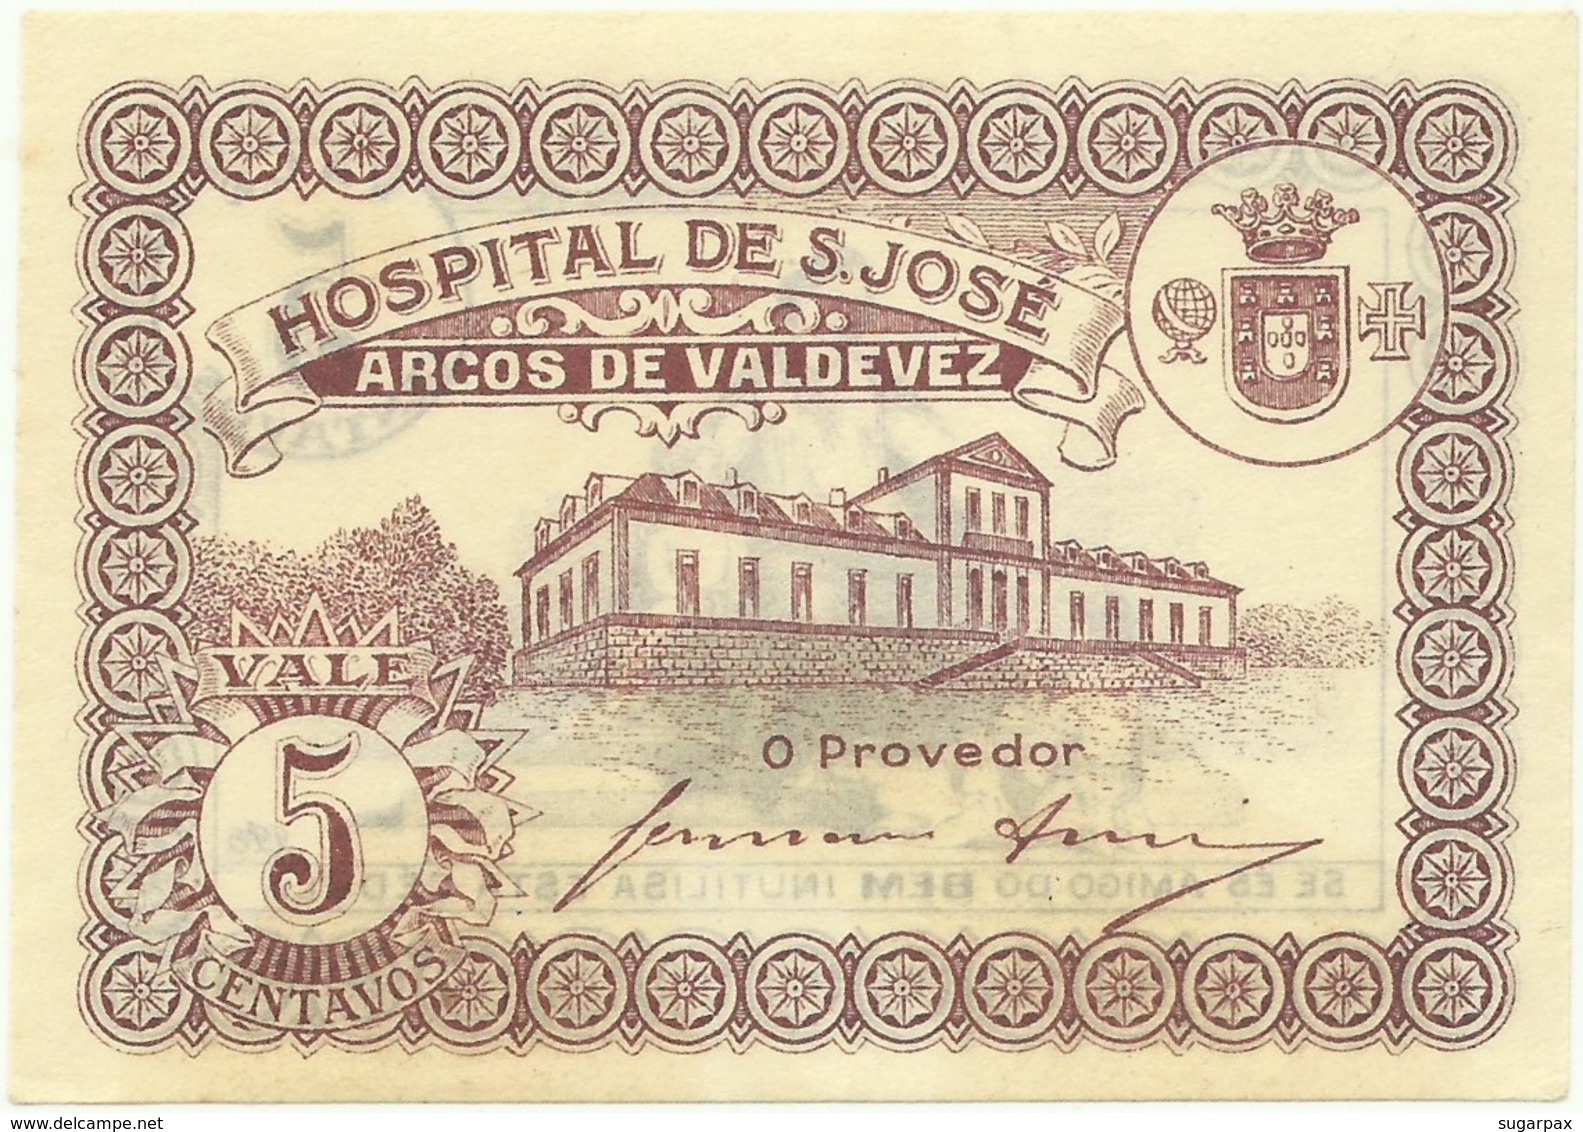 ARCOS DE VALDEVEZ - CÉDULA De 5 CENTAVOS - M.A. 249 - UNC. - ND - PORTUGAL - EMERGENCY PAPER MONEY - NOTGELD - Portugal